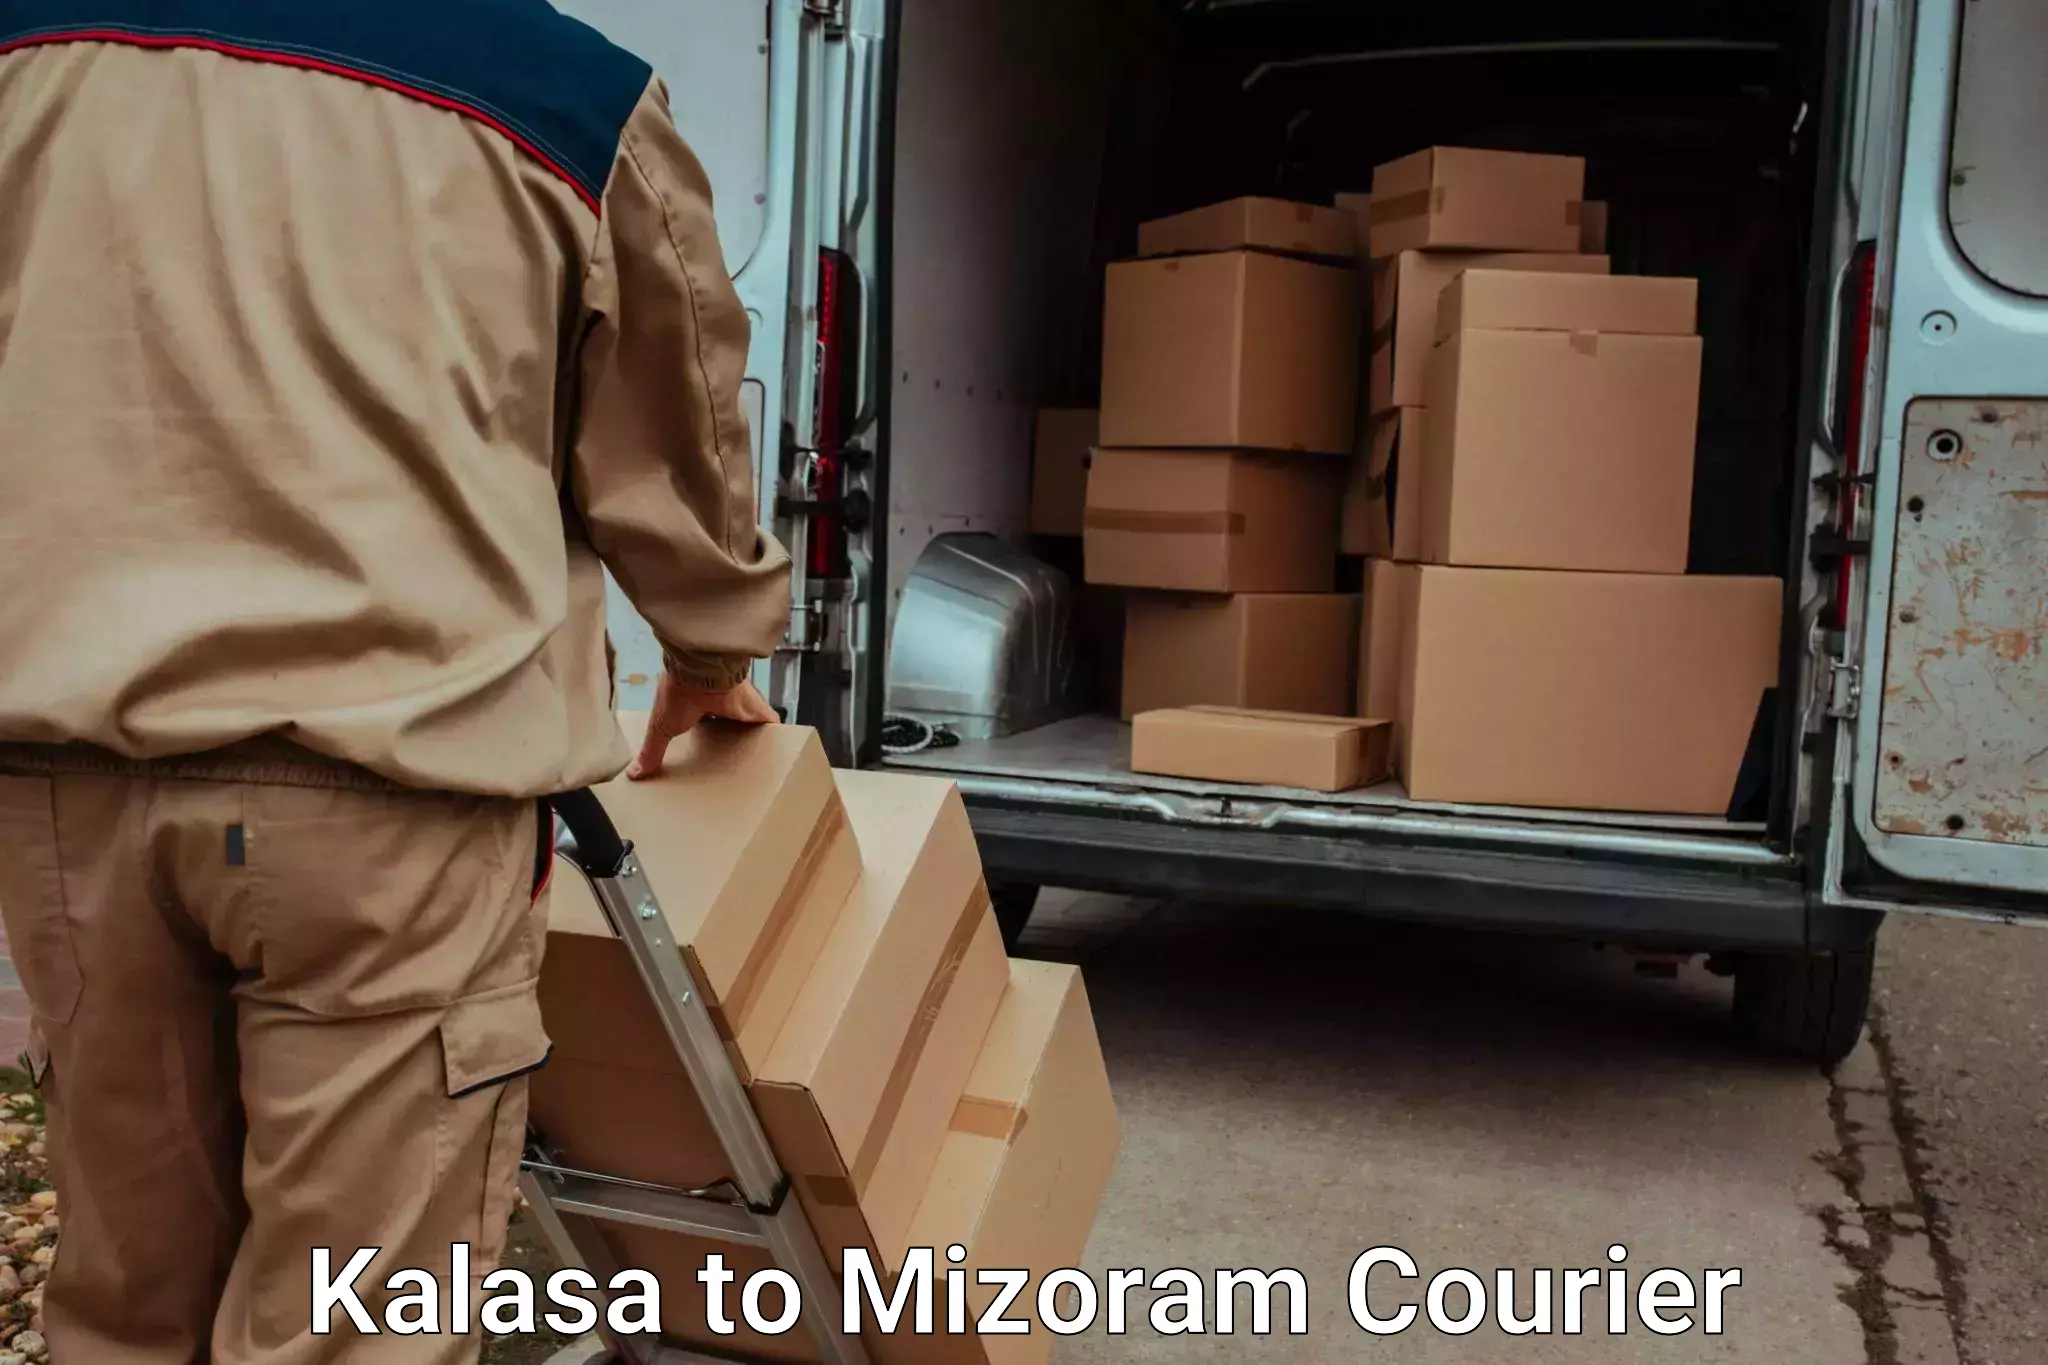 Excess baggage transport in Kalasa to Mizoram